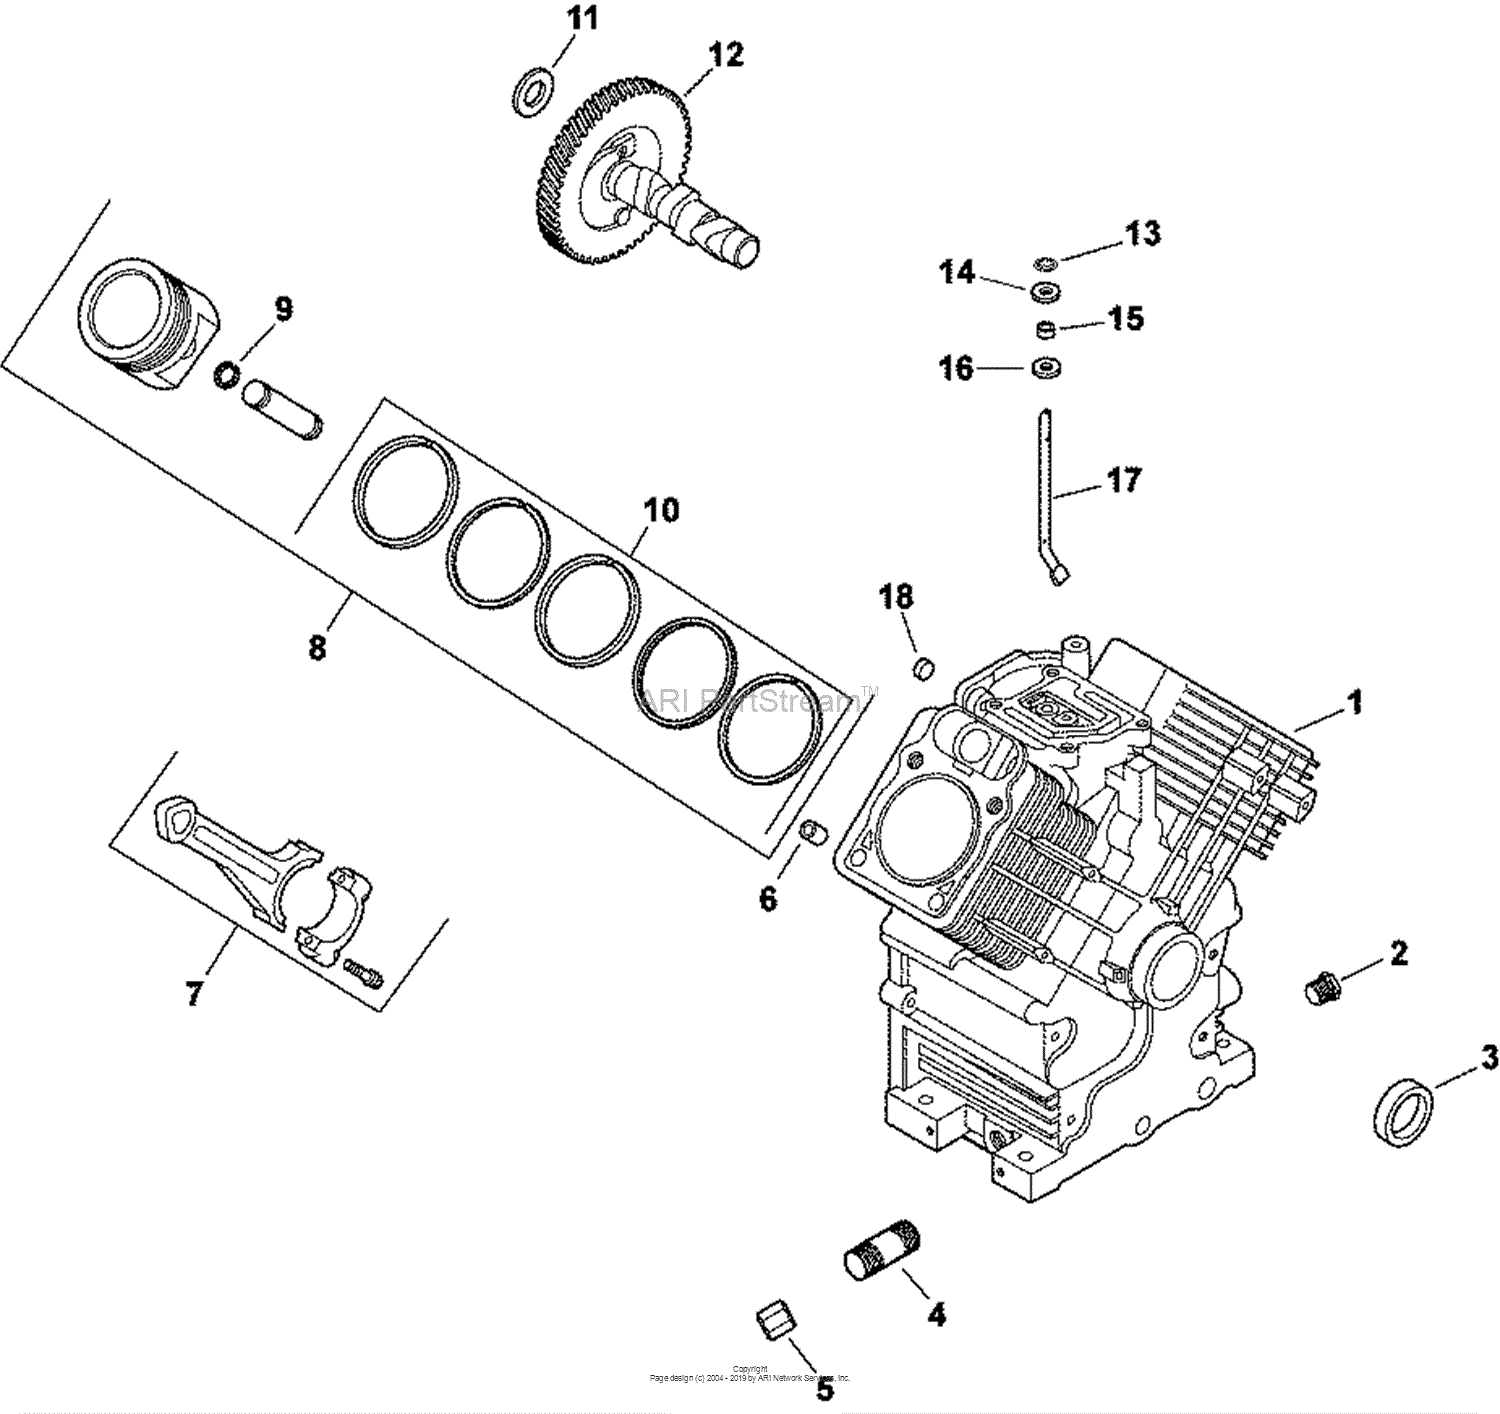 30 John Deere 2 Cylinder Engine Diagram